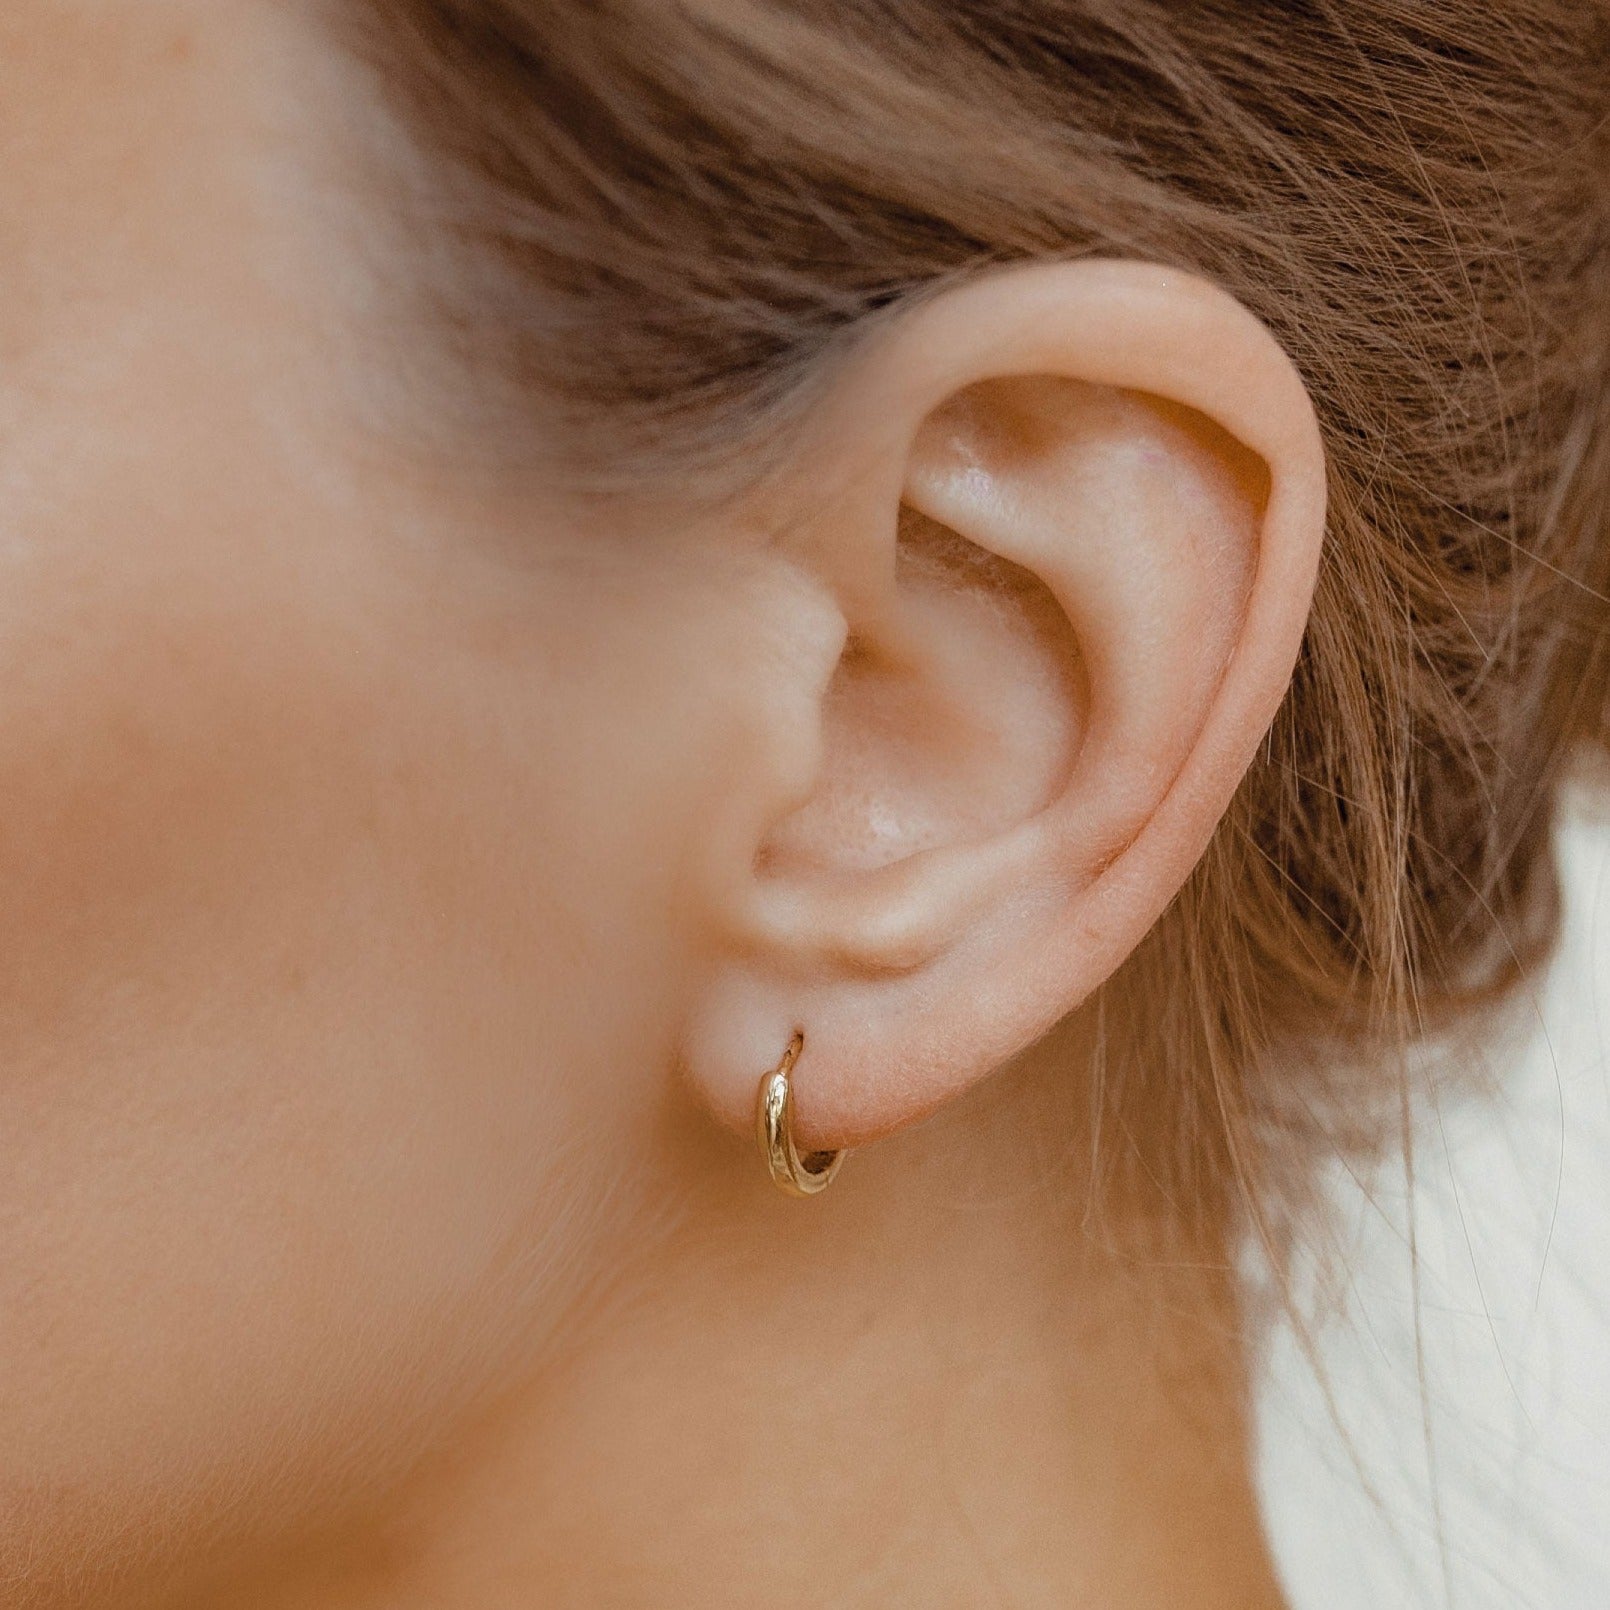 Ear Cuff Earrings – Hey Happiness